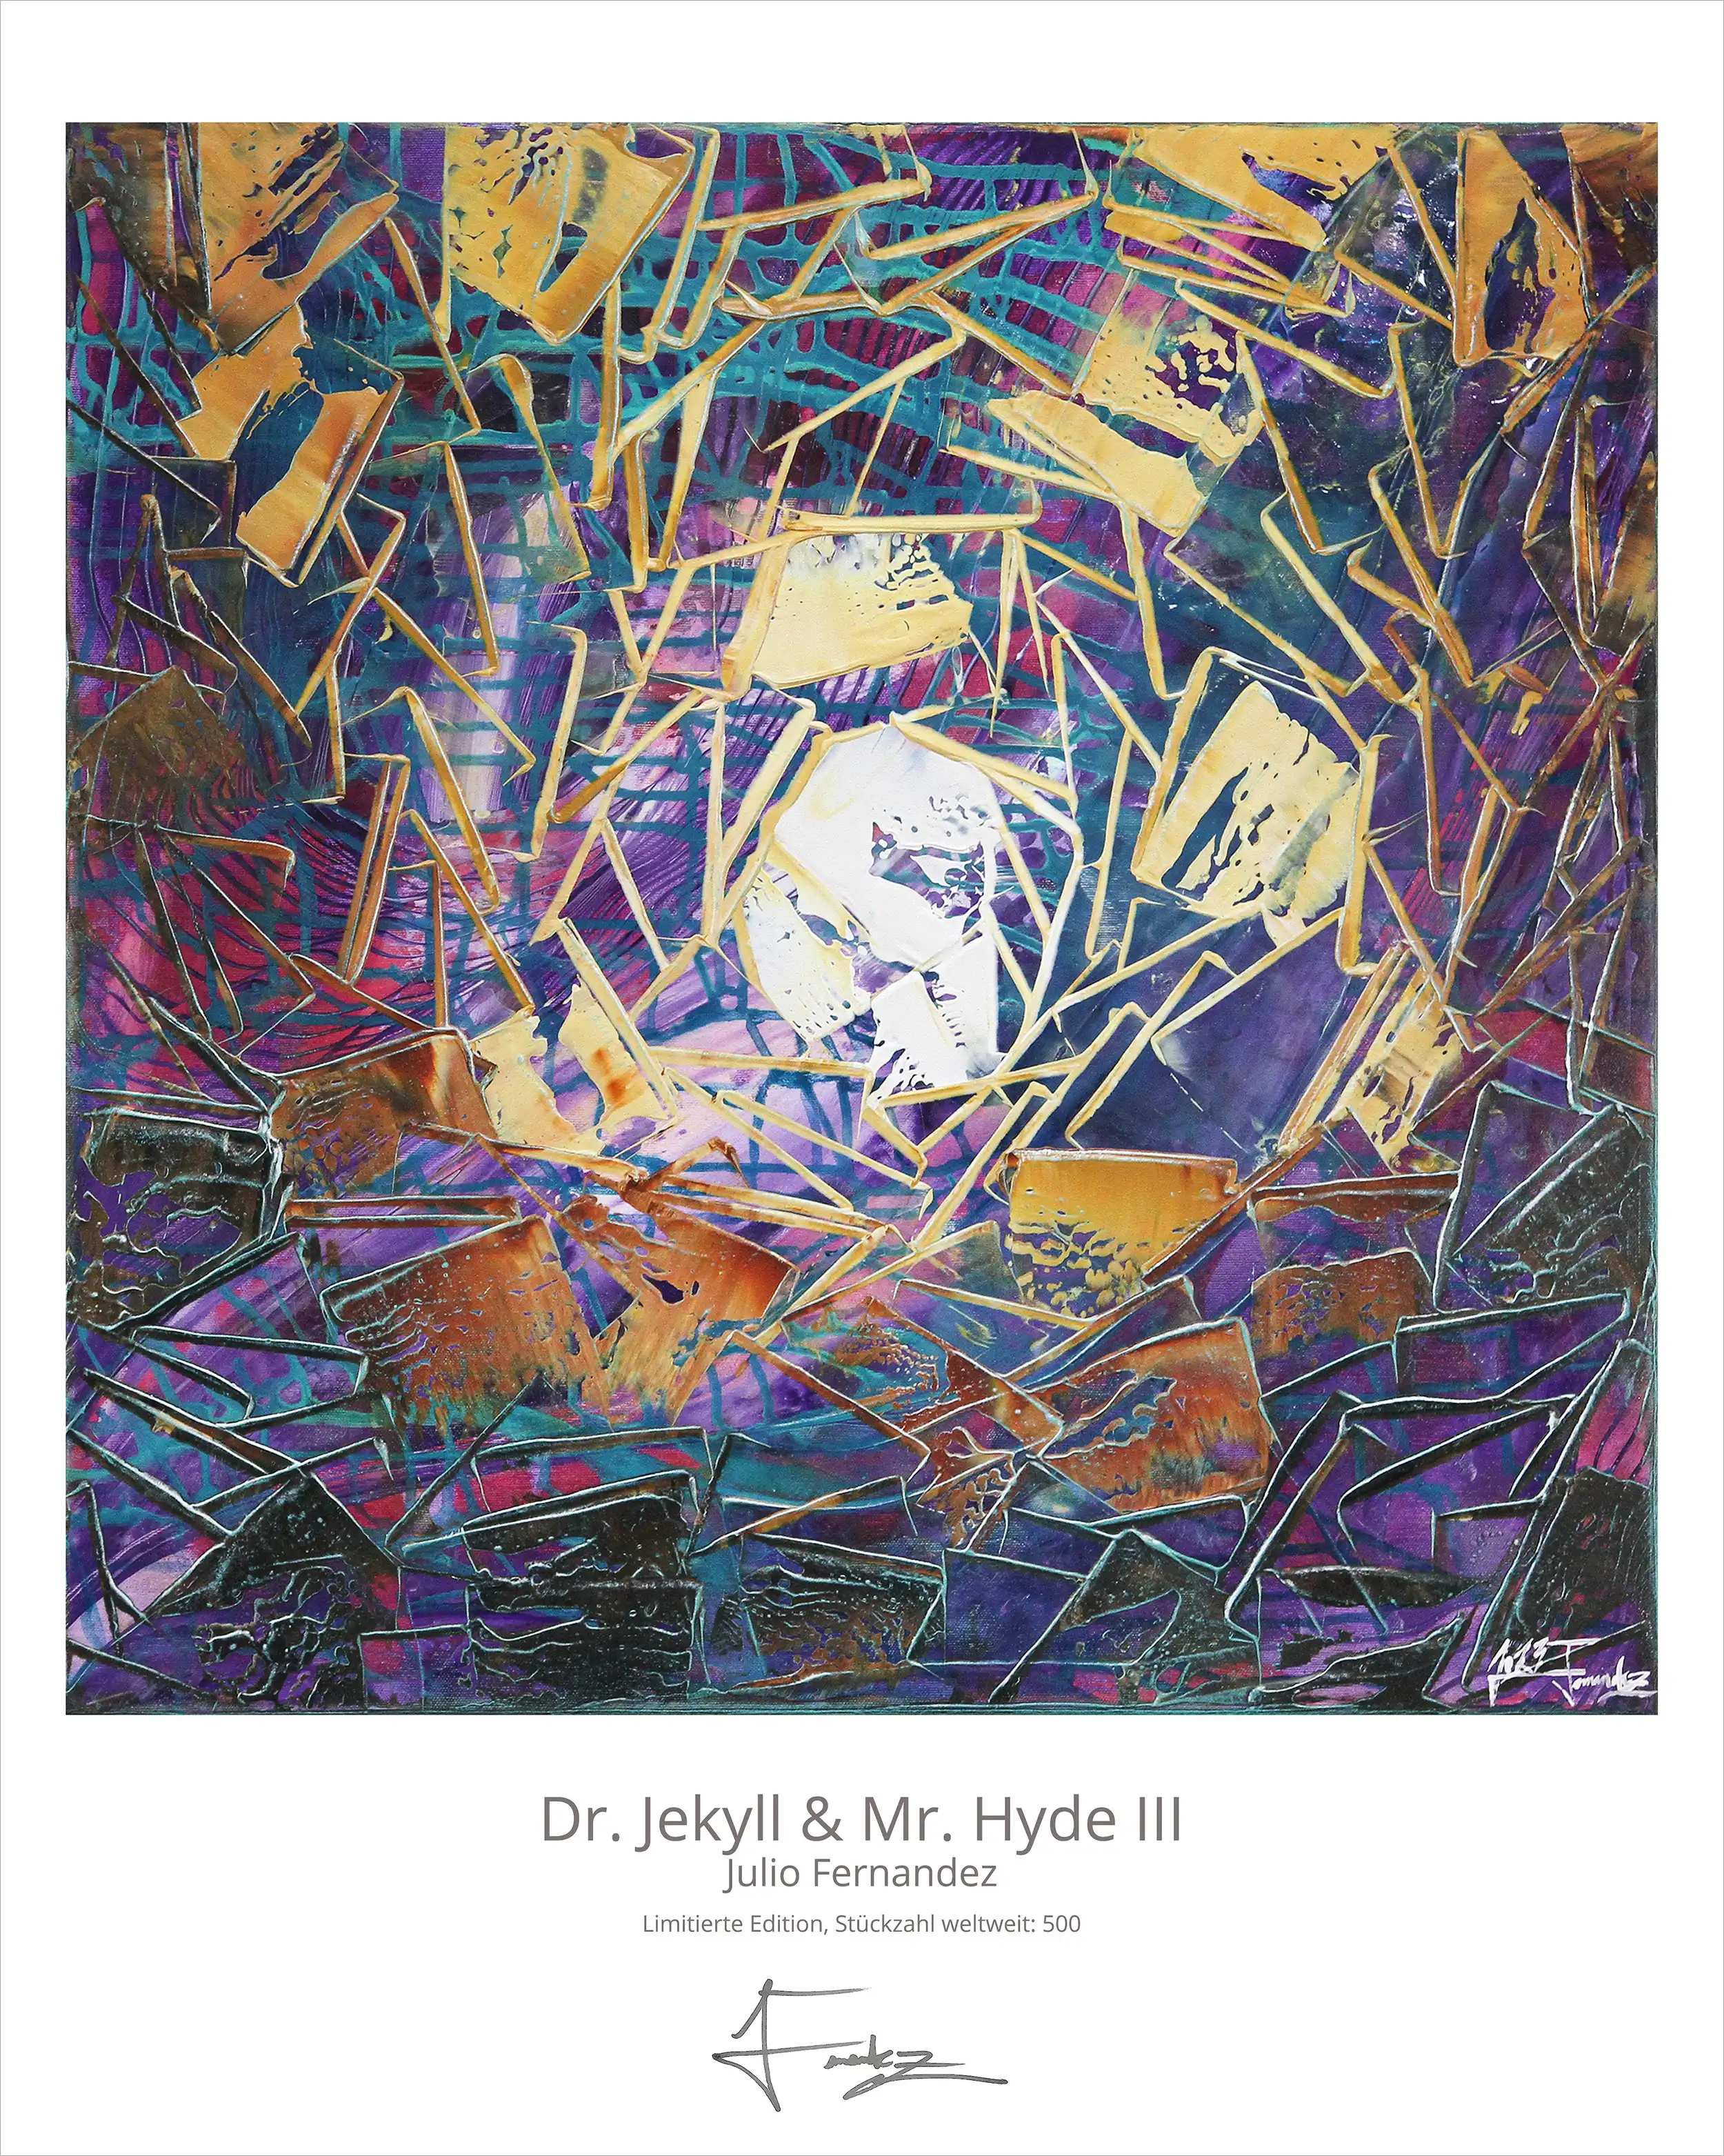 Limitierte Edition auf Papier, J. Fernandez "Dr. Jekyll & Mr. Hyde III", Fineartprint, Kollektion E&K